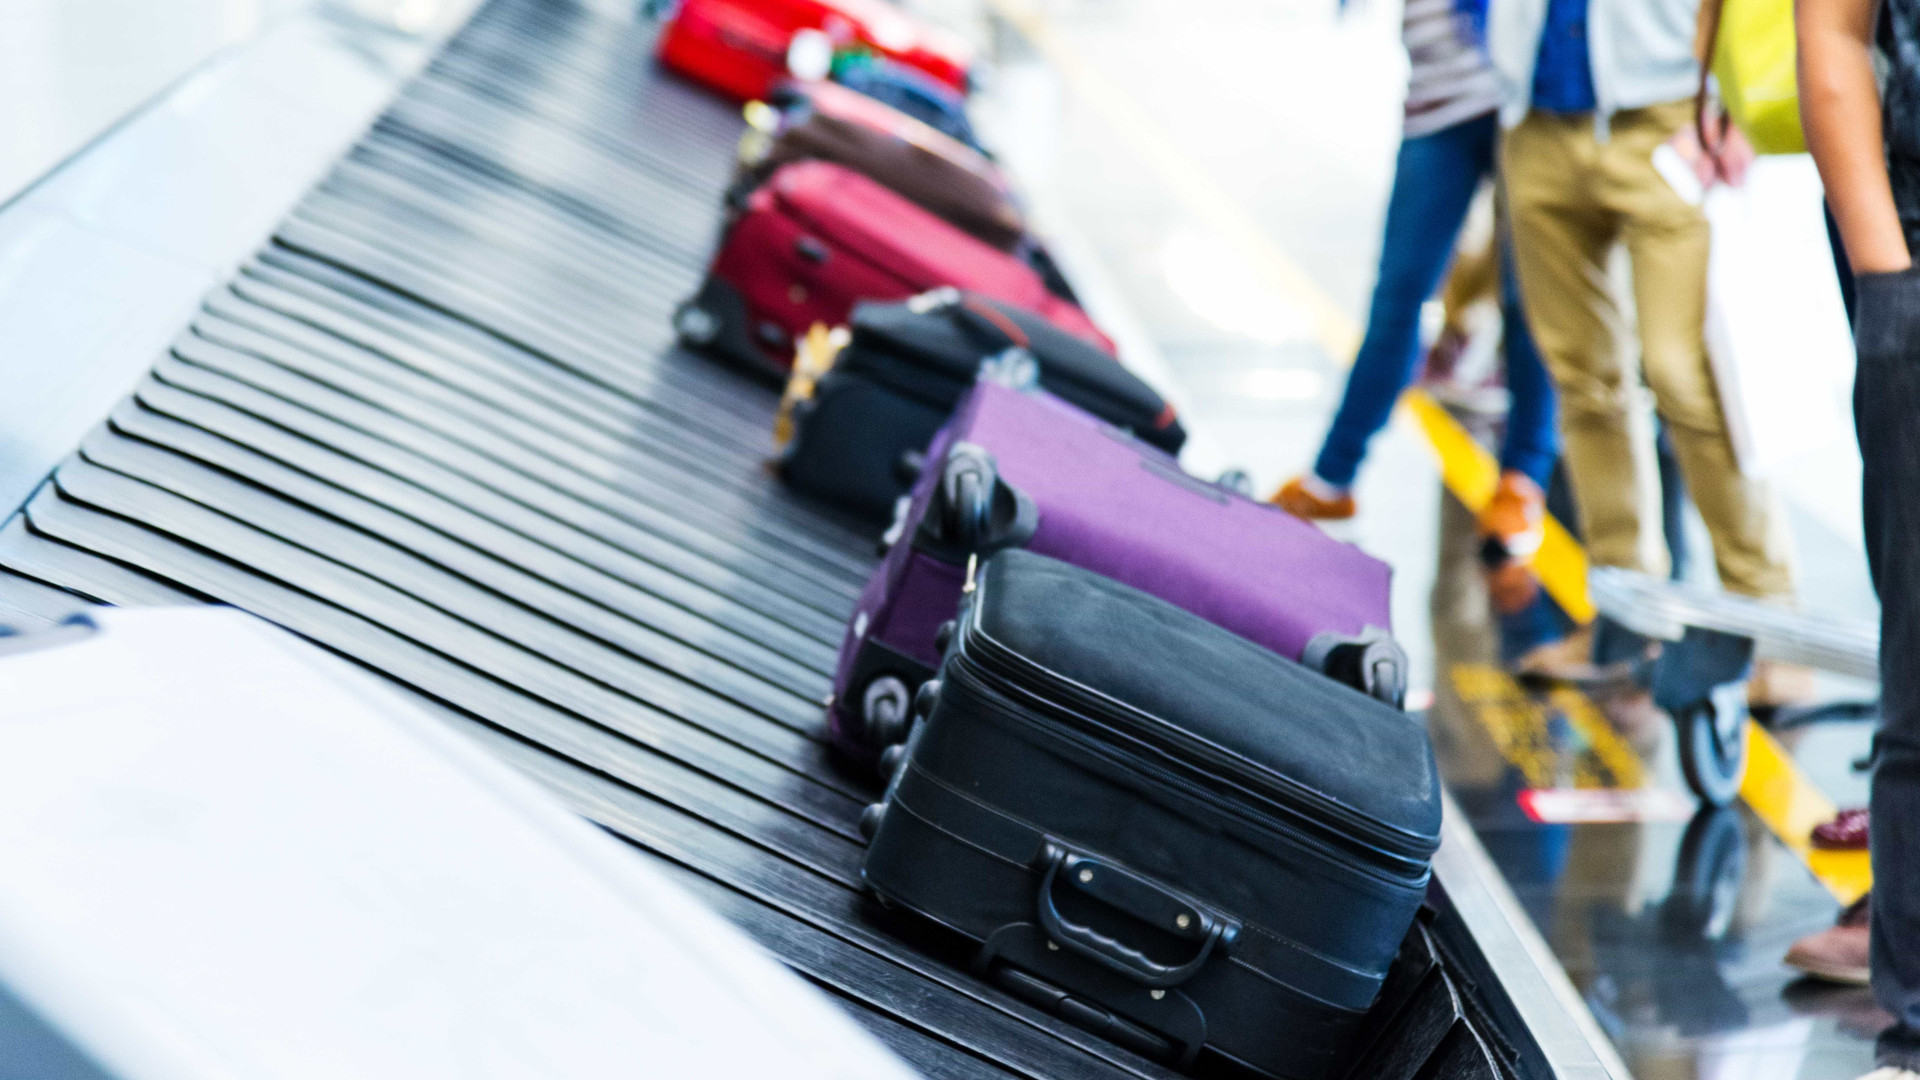 Anac: cobrança de tarifa por
 bagagem promove 'turismo de mochila'